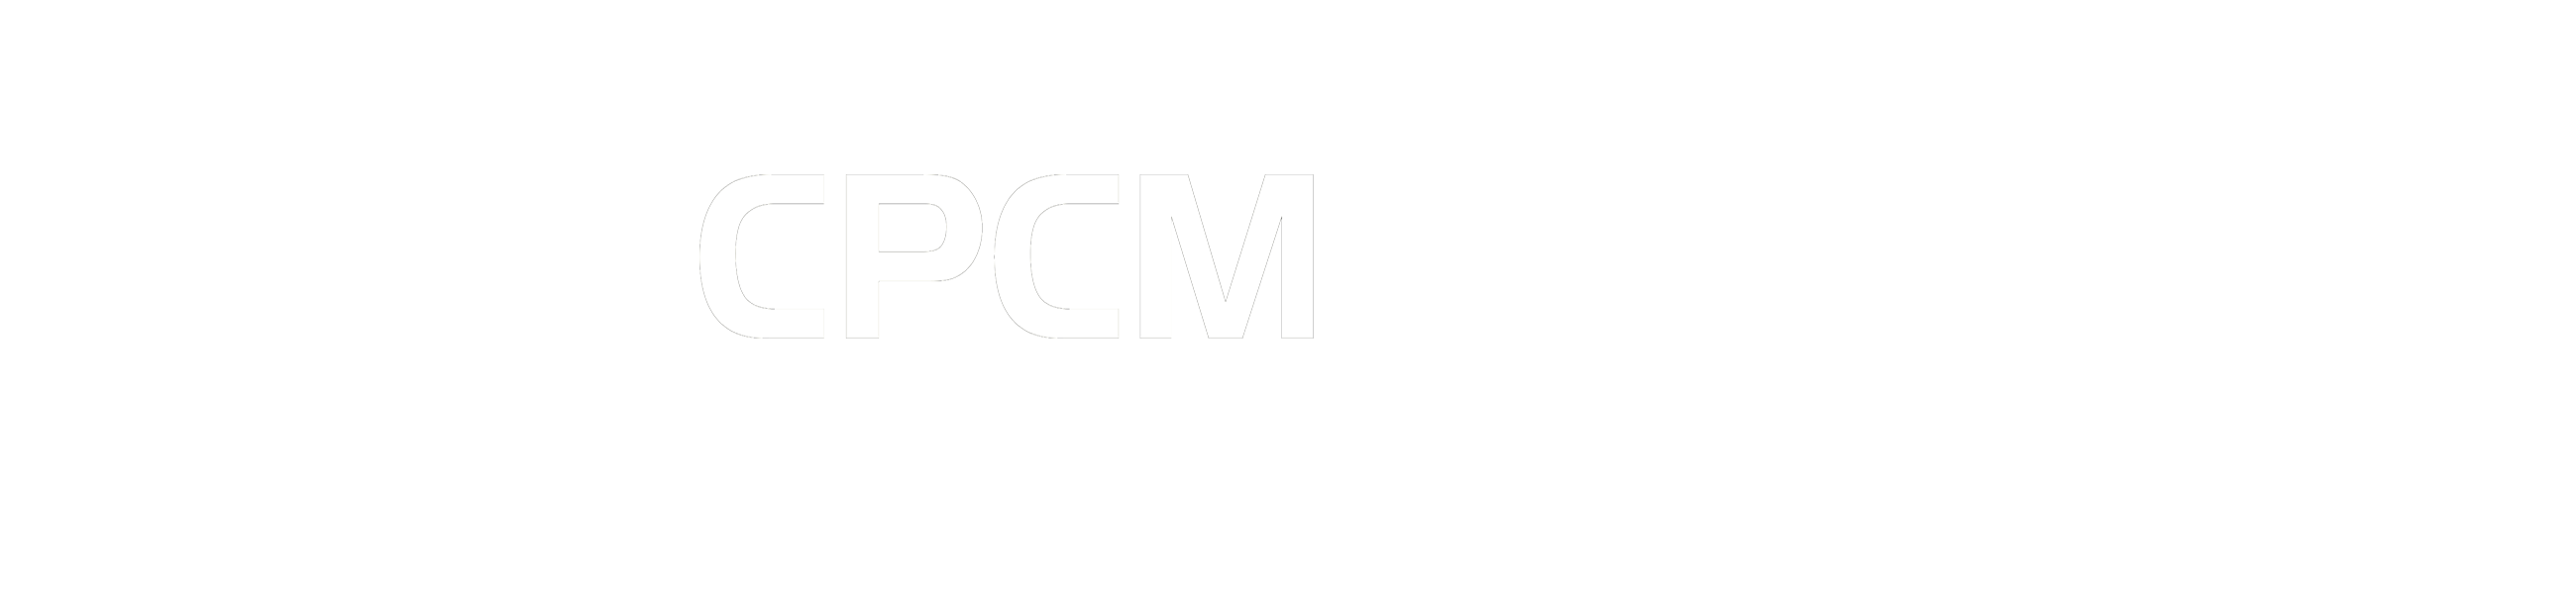 CPCM印花版权管理